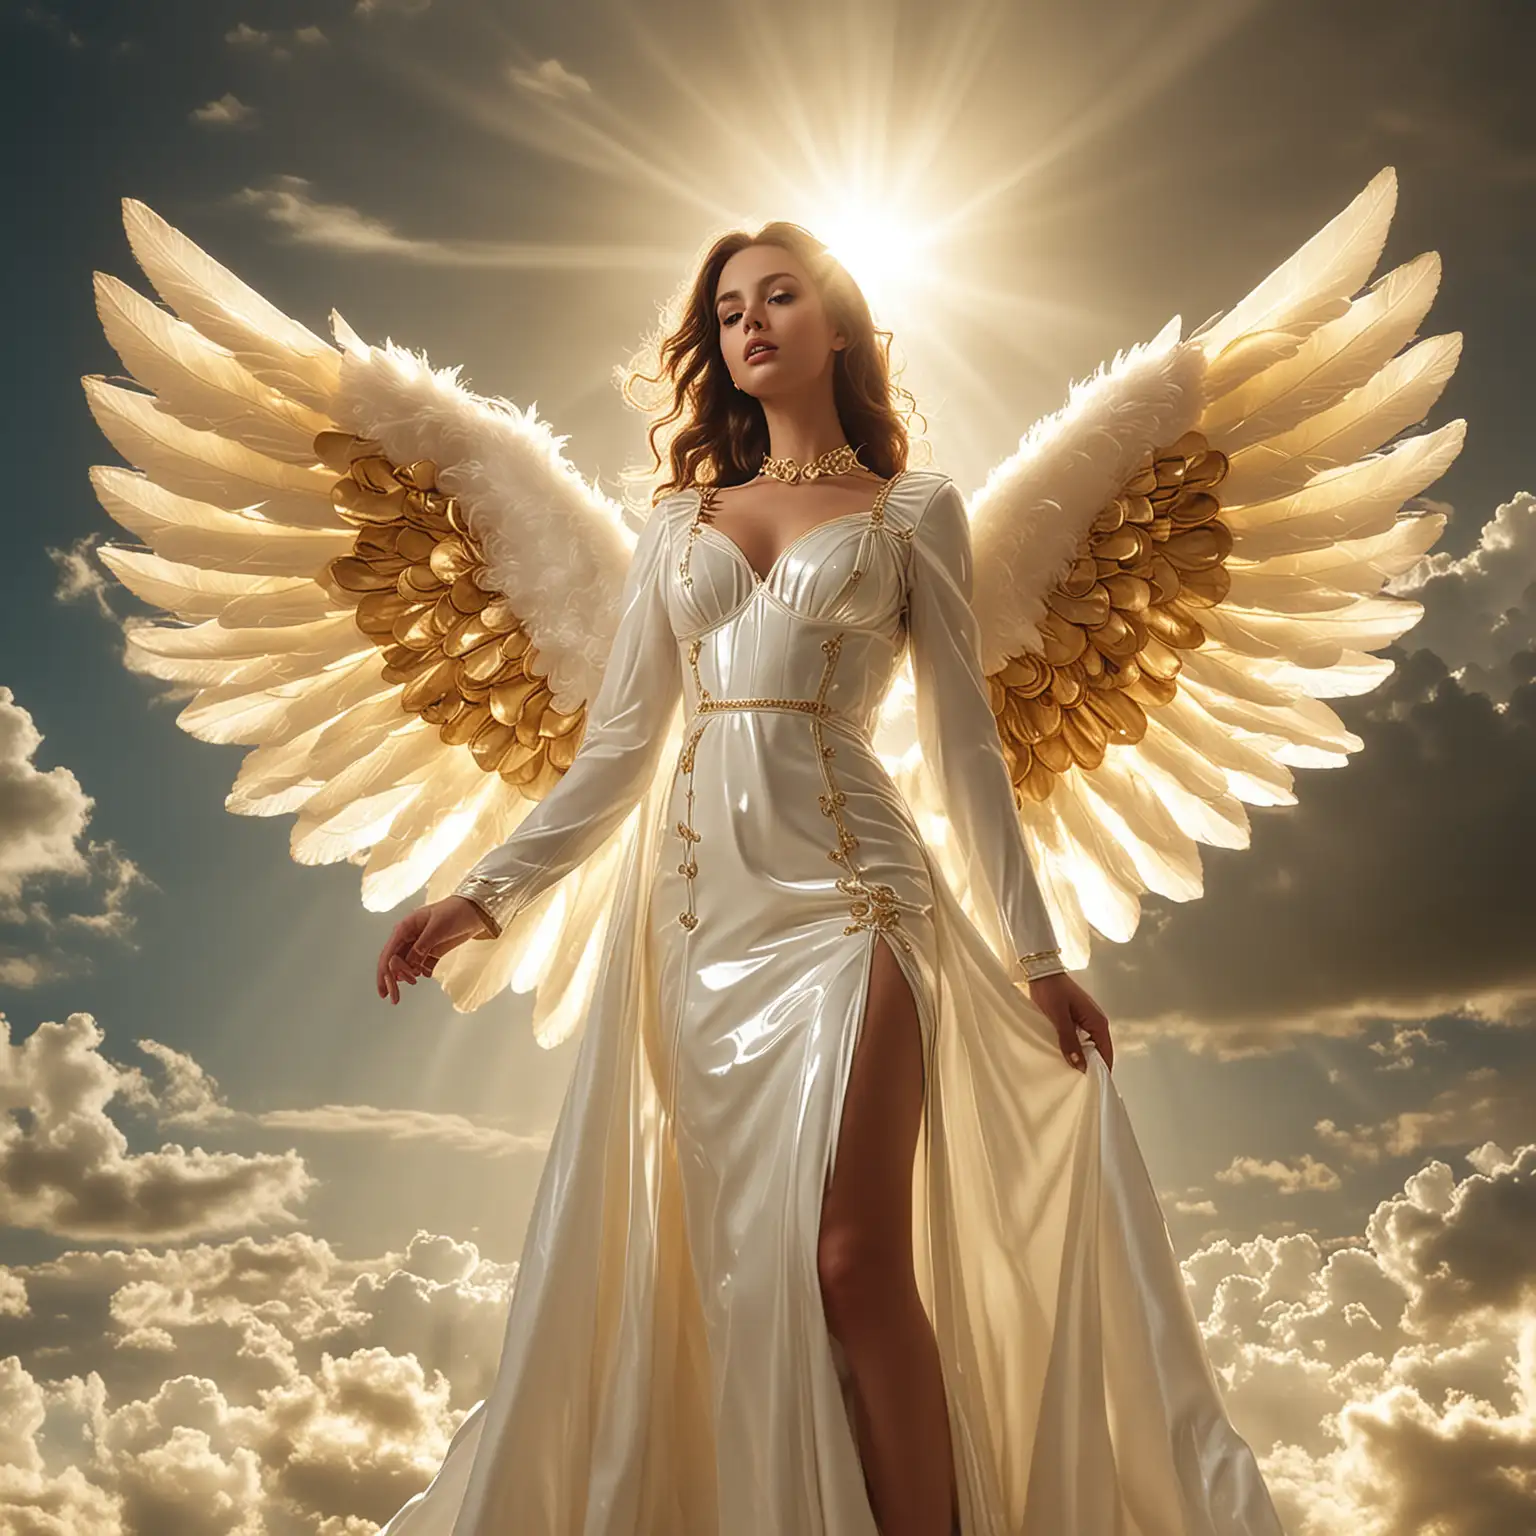 Divine Angel in Gleaming White Heavenly Latex Dress Amidst Golden Sunlight